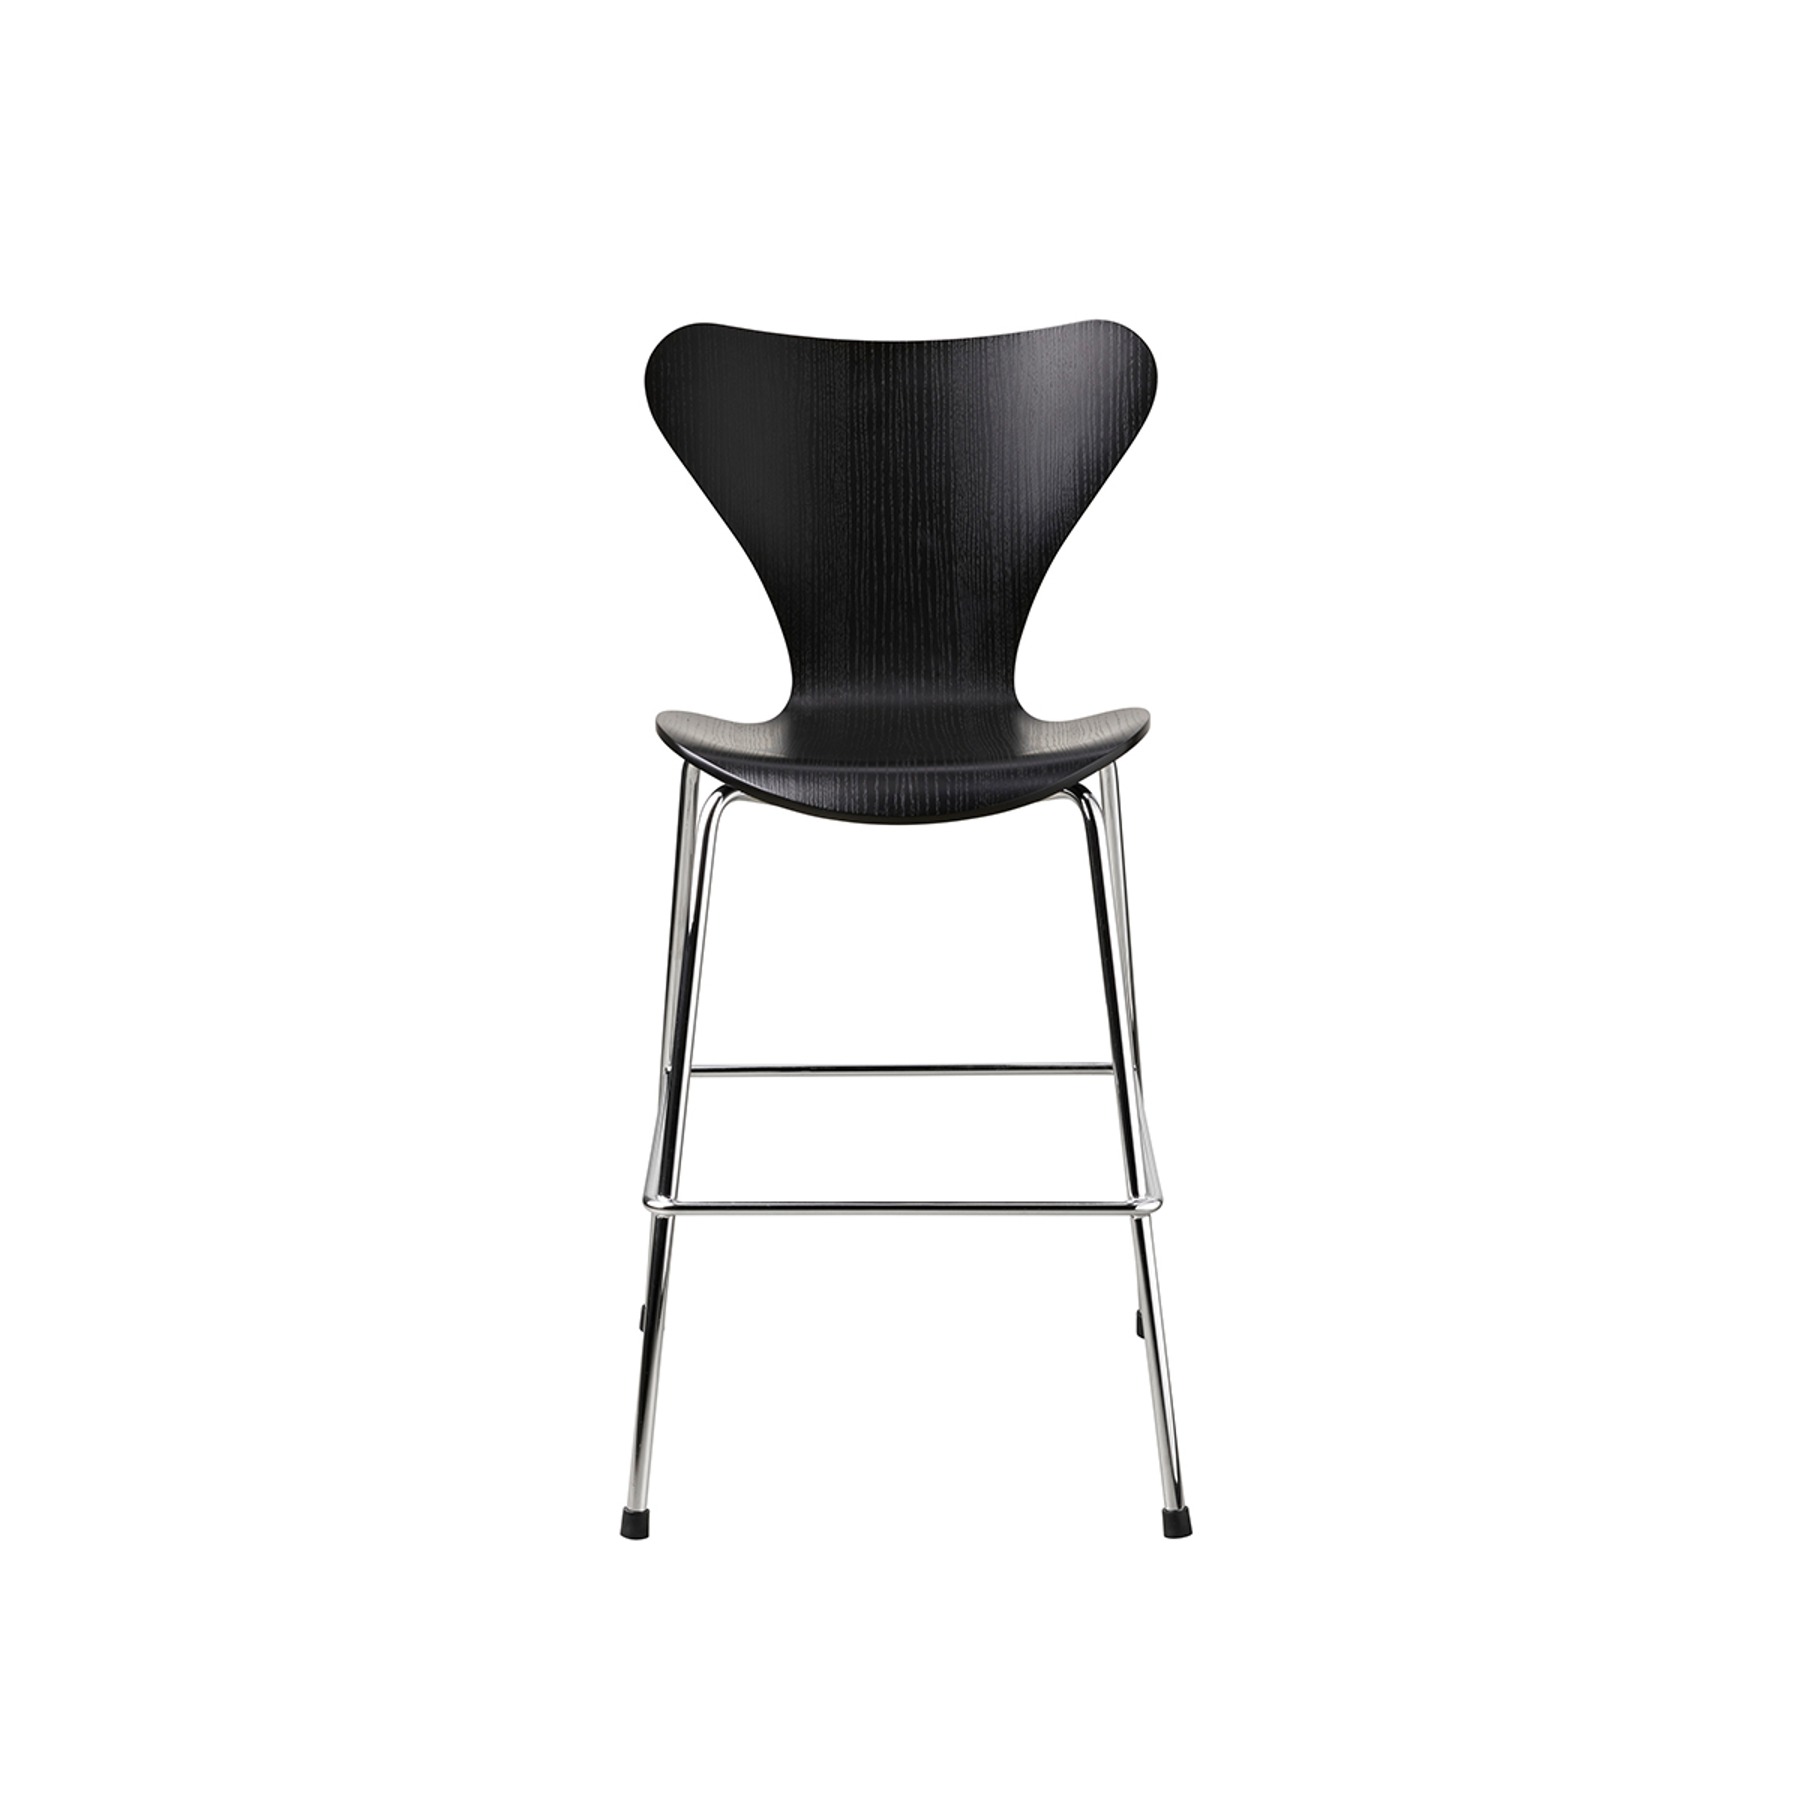 Series 7™ Junior Chair Black  프리츠한센 시리즈 세븐 주니어 체어 블랙